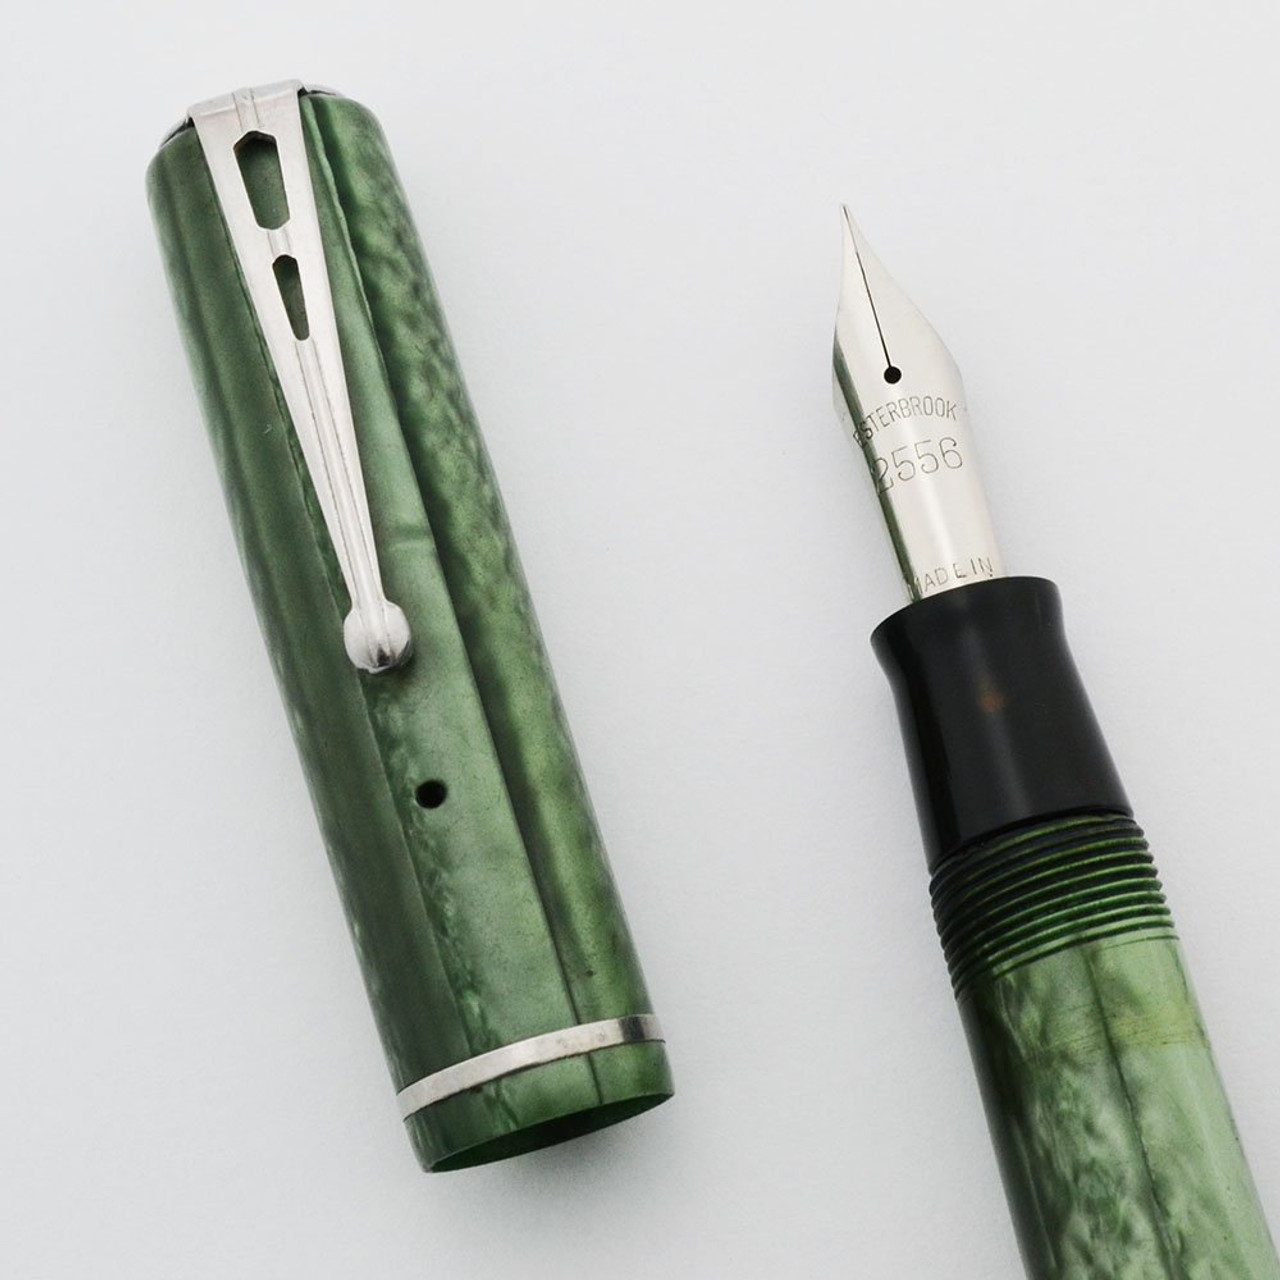 Esterbrook B Dollar Fountain Pen - Green, #2556 Firm Fine Nib (Excellent, Restored)